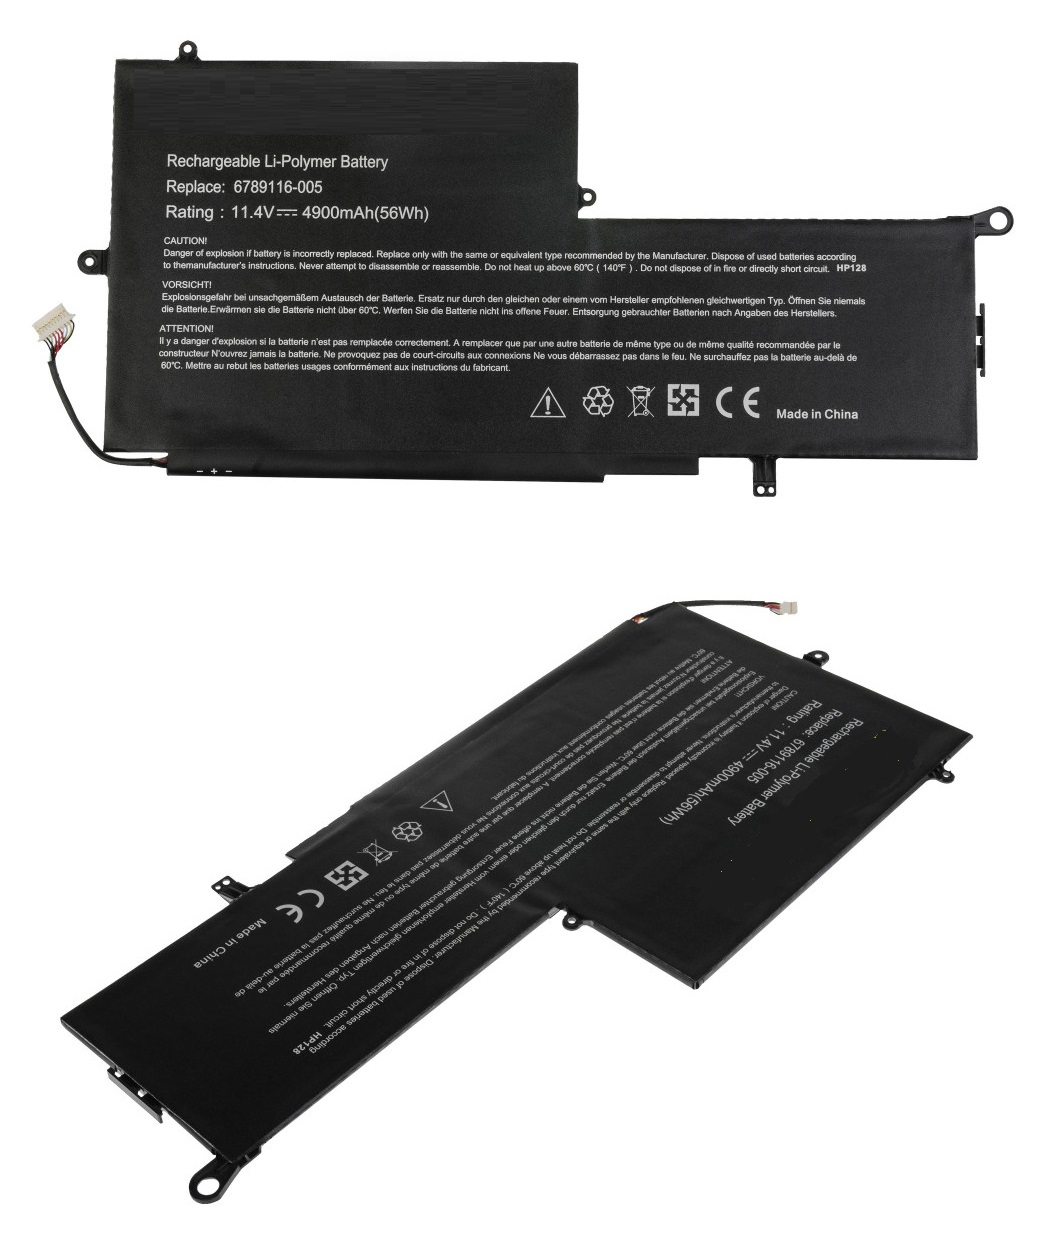 HP Spectre x360 13-001ni LH61ea Laptop Battery